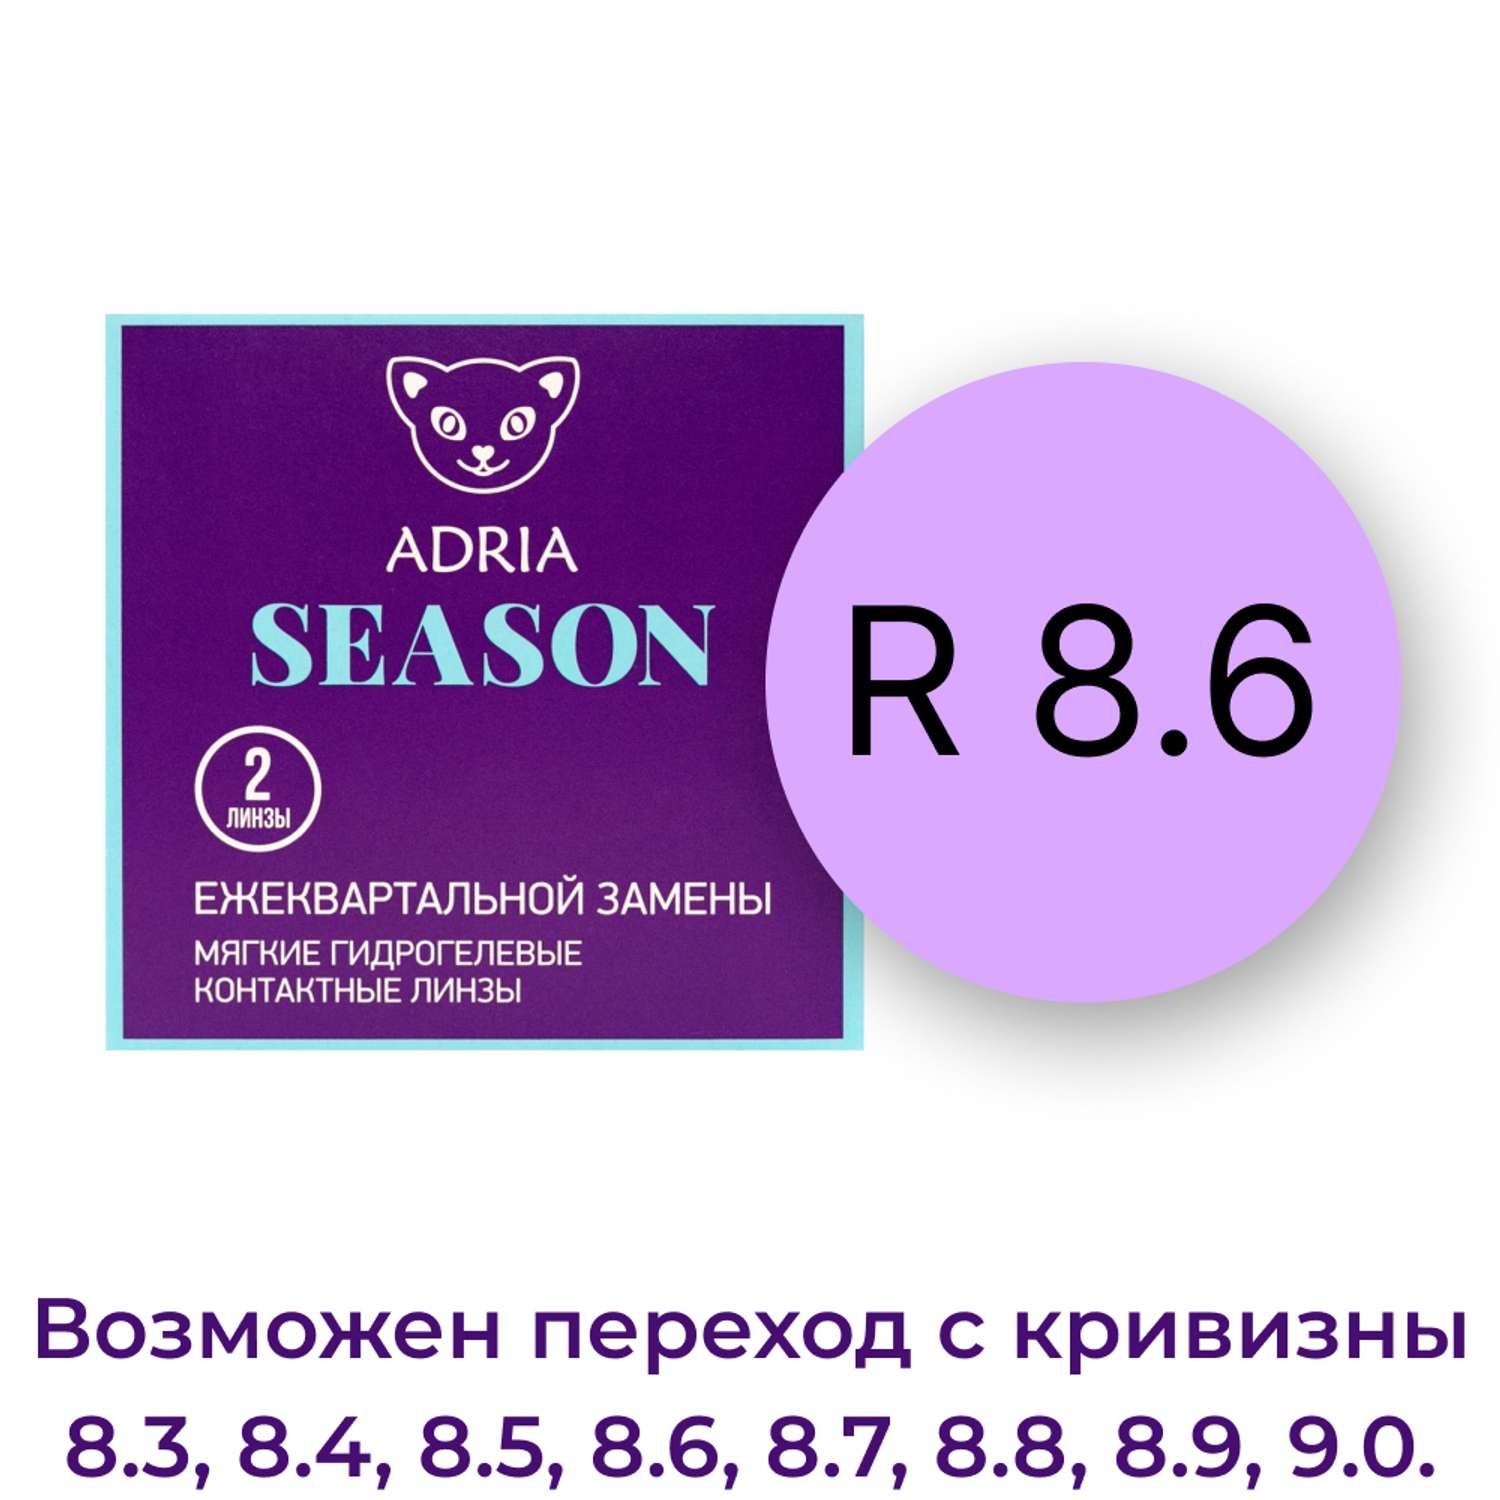 Контактные линзы ADRIA Season 2 линзы R 8.6 -4.50 - фото 3